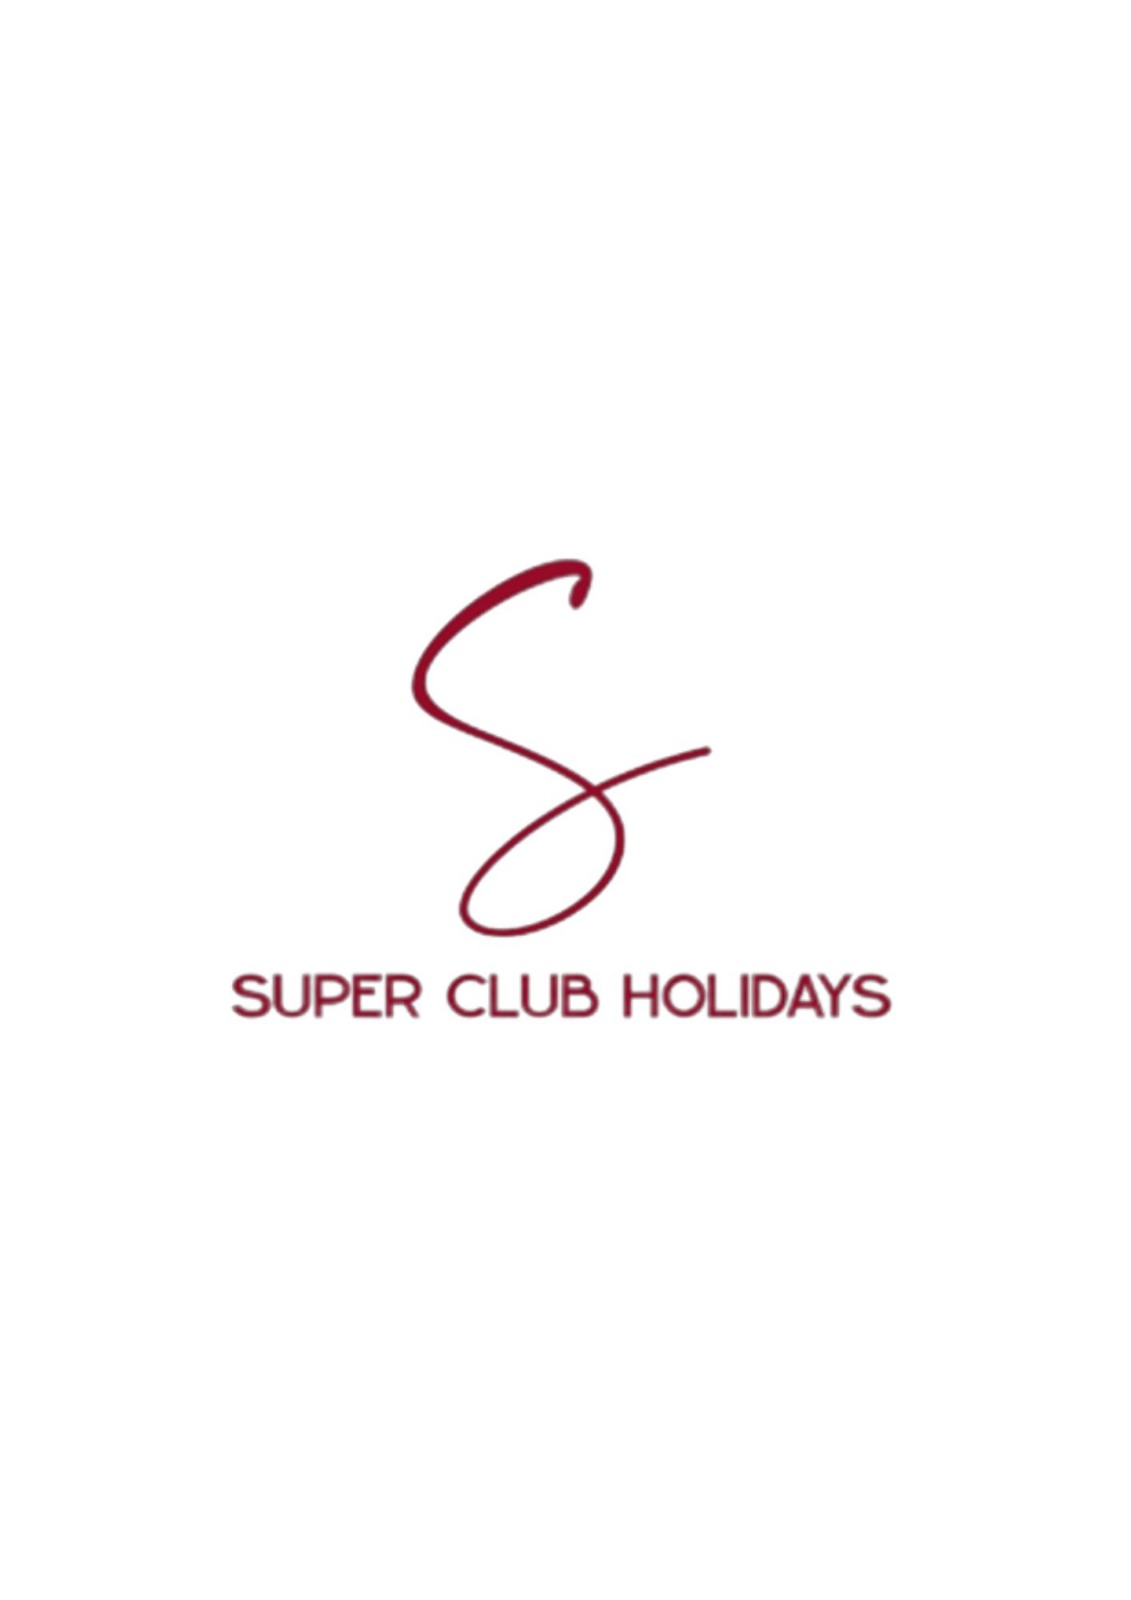 Super Club Holidays